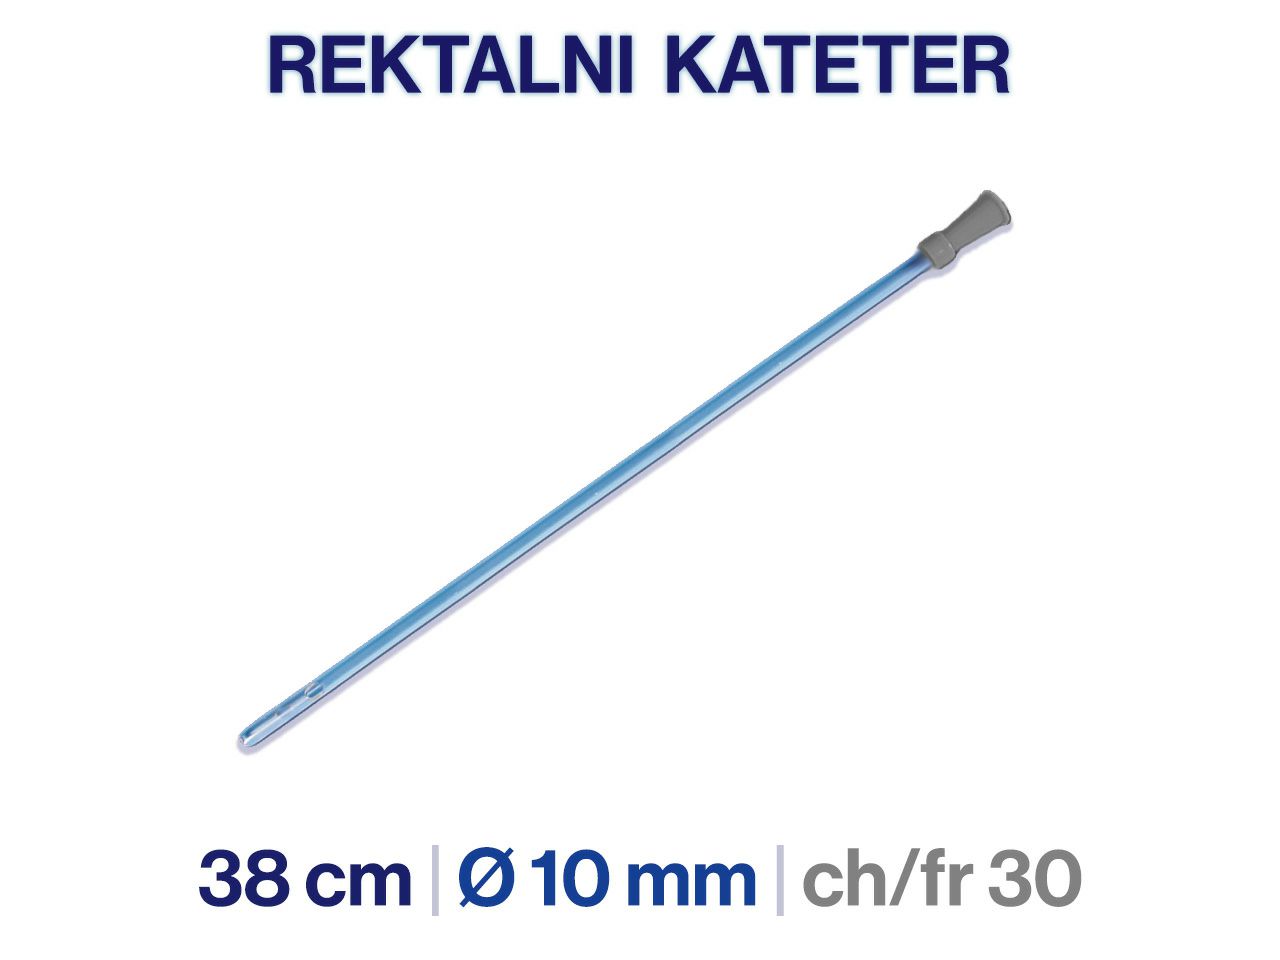  REKTALNI KATETER CH 30, 38 cm, 20 kom.